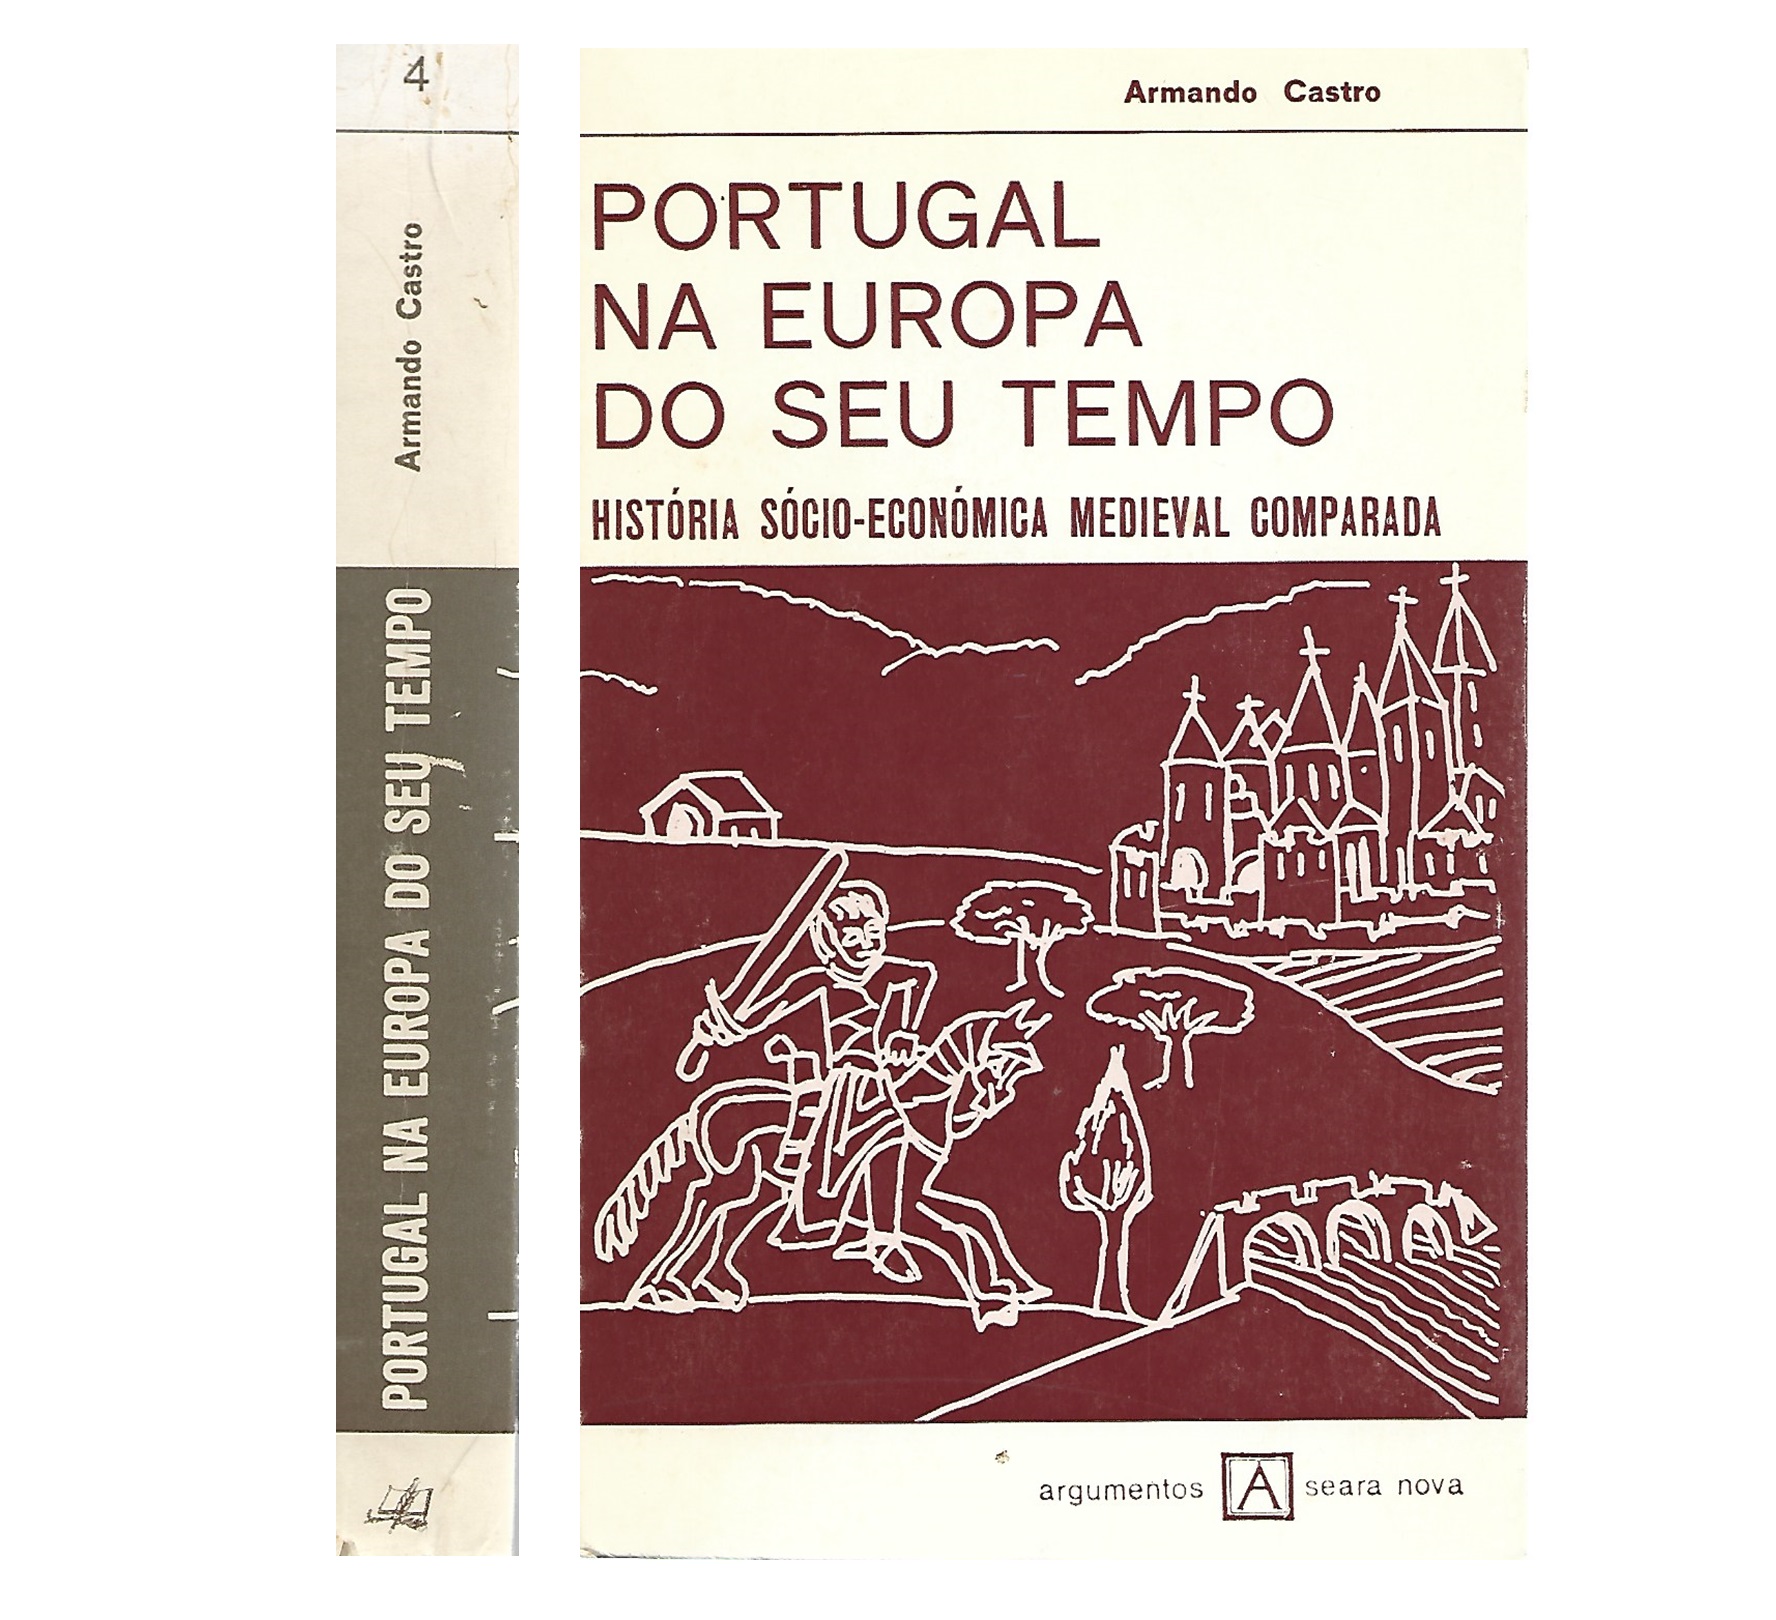 PORTUGAL NA EUROPA DO SEU TEMPO: HISTÓRIA SÓCIO-ECONÓMICA MEDIEVAL COMPARADA